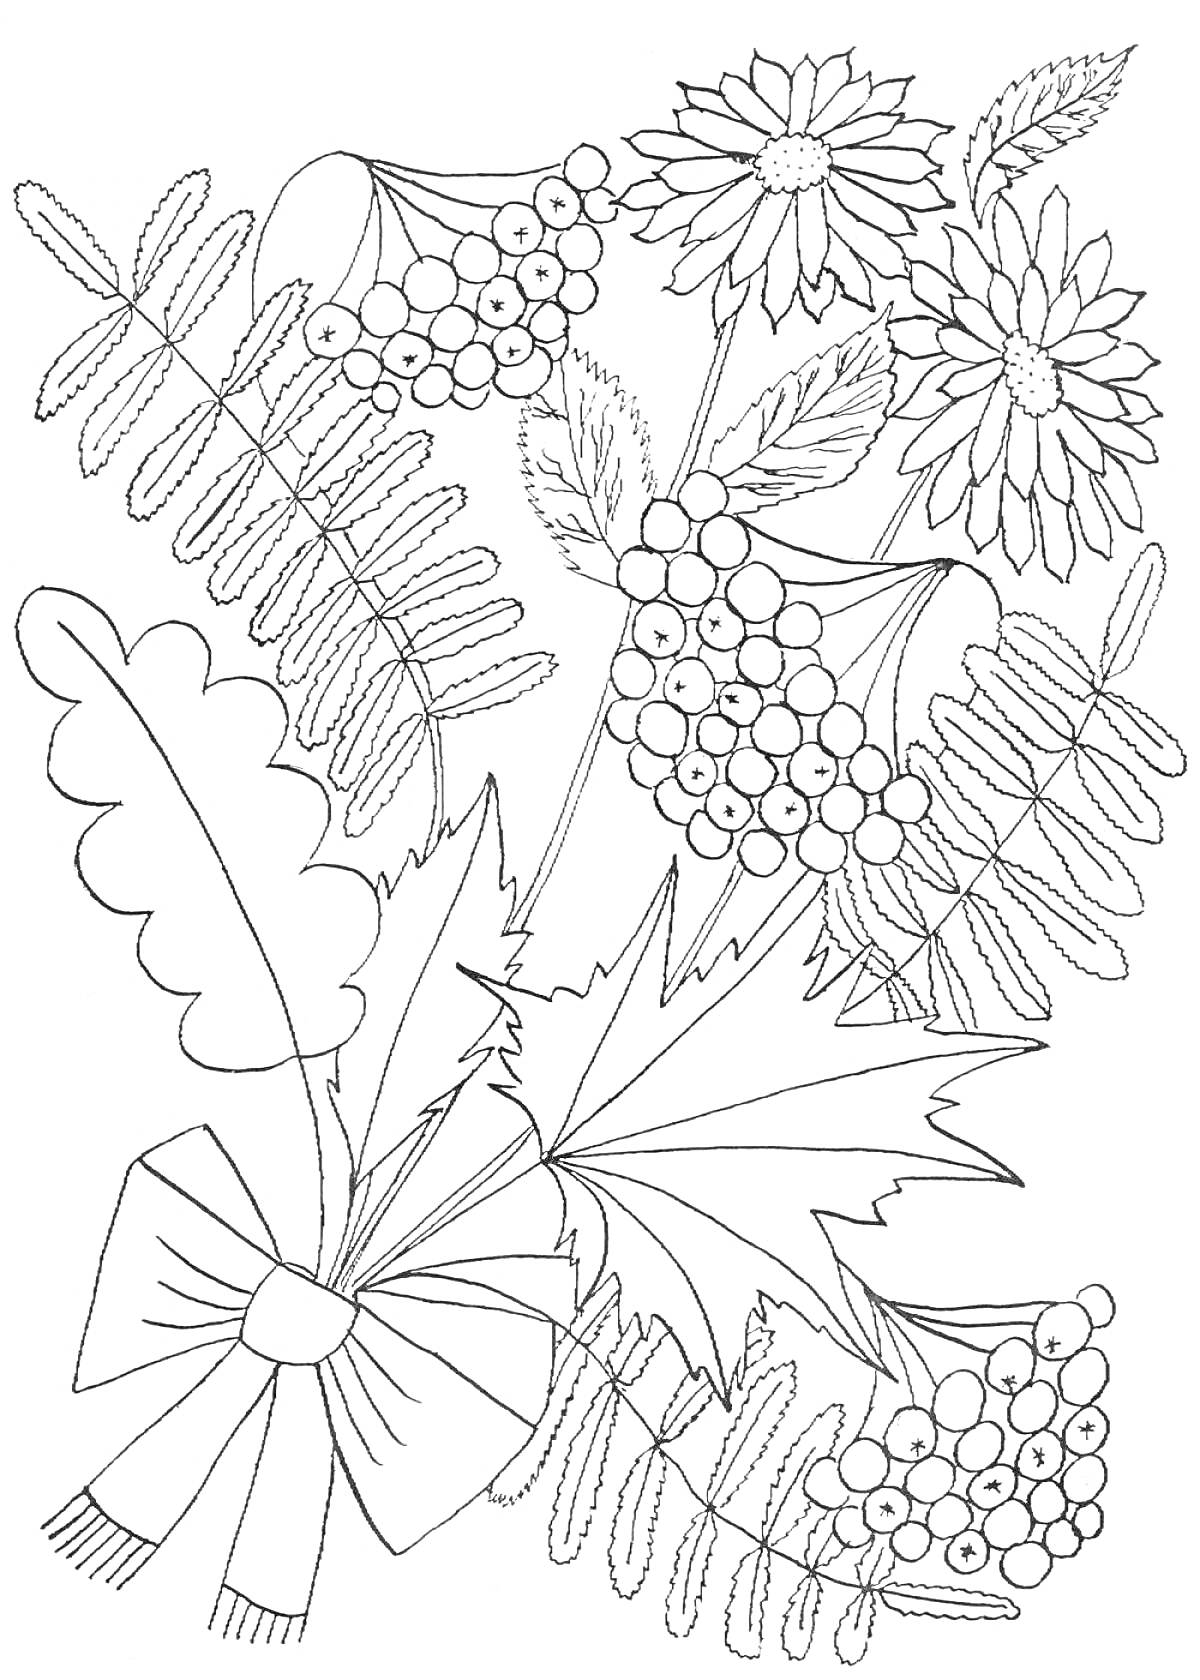 РаскраскаОсенний букет с рябиной, листьями папоротника, хризантемами и воздушным бантом